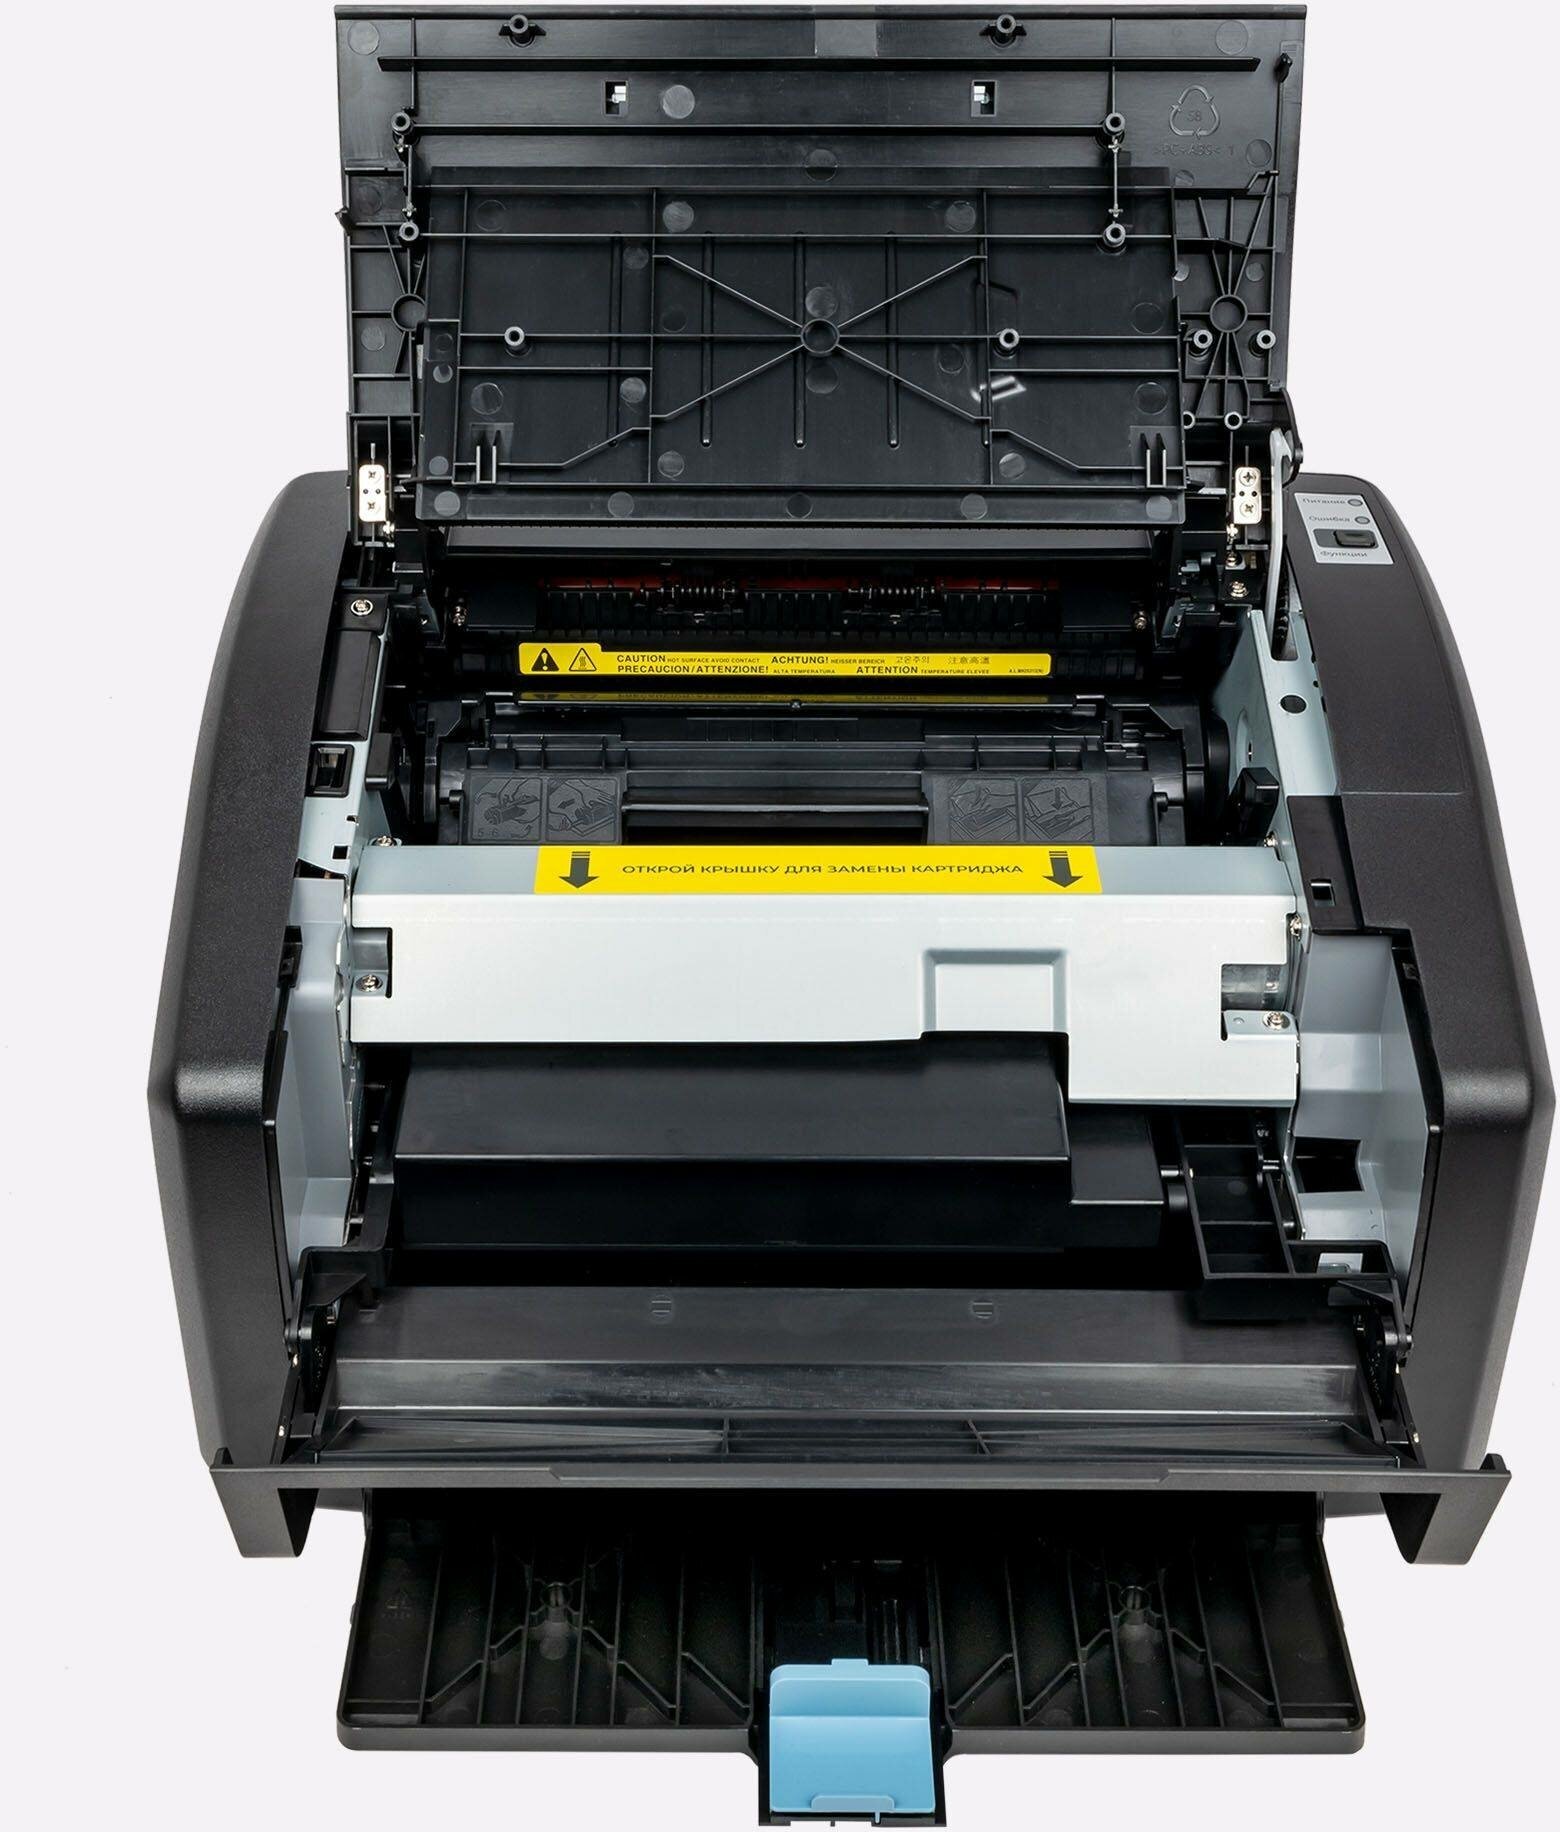 Лазерный принтер сетевой HIPER P-1120NW Black